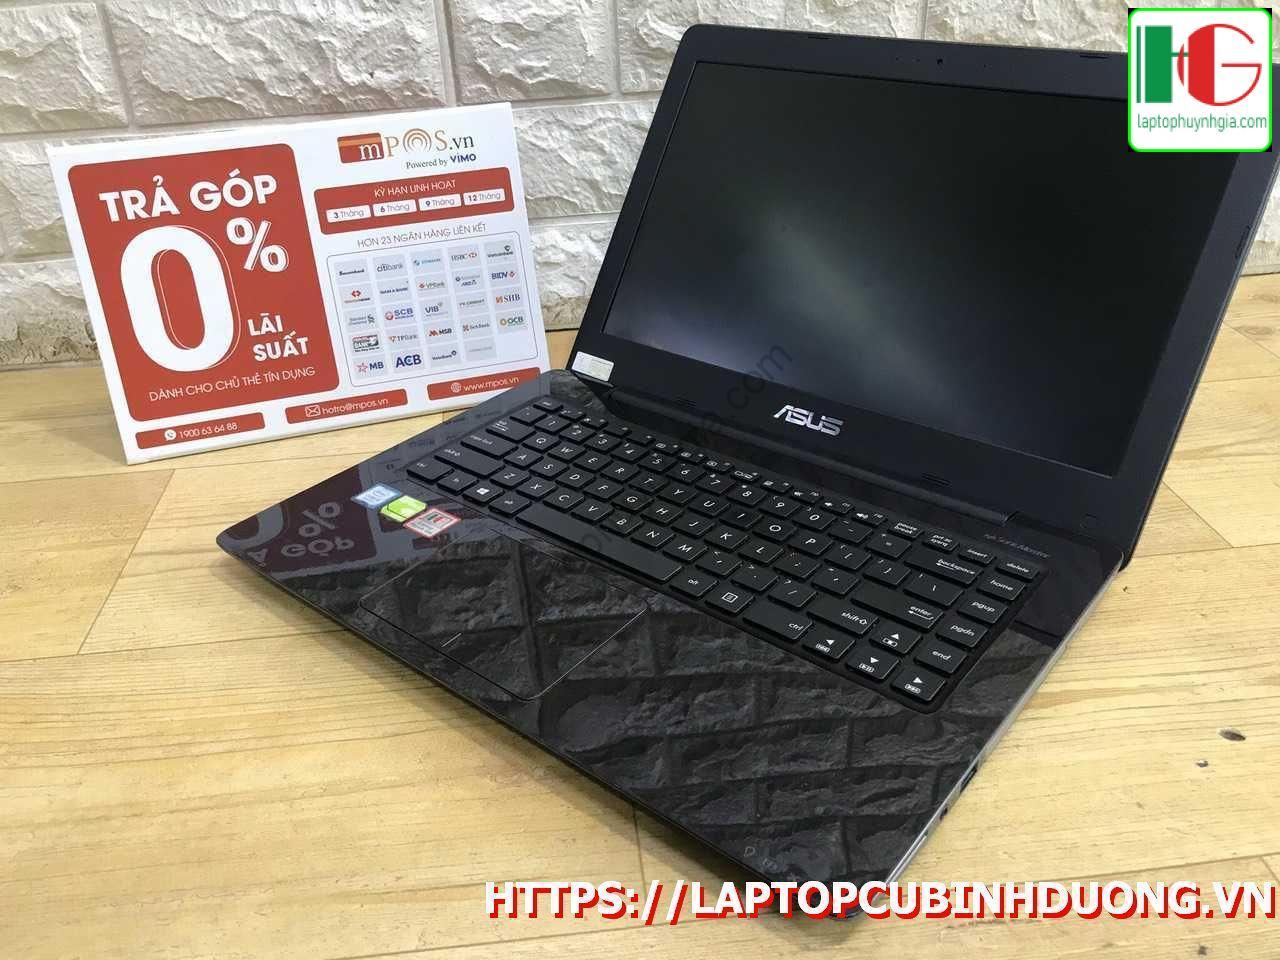 Laptop Asus X456 I5 7200u 4g Ssd 128g Nvidia Gt930mx Laptopcubinhduong.vn 1 [kích Thước Gốc] Result